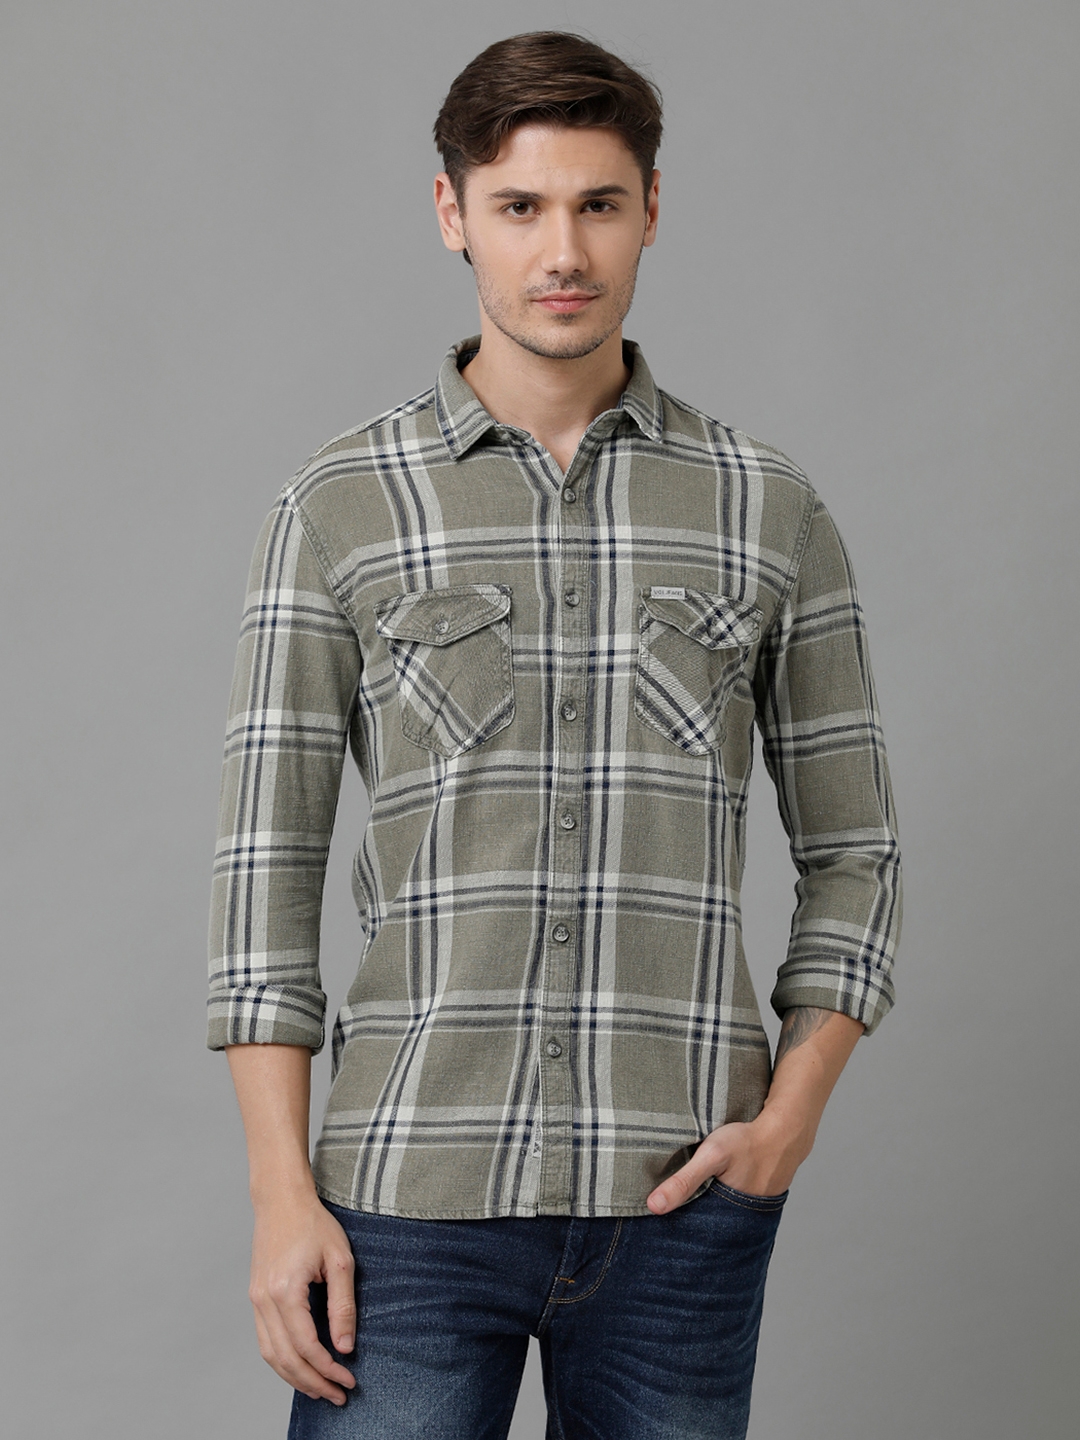 Men's Olive Indigo Checks Cotton Checkered Casual Shirt